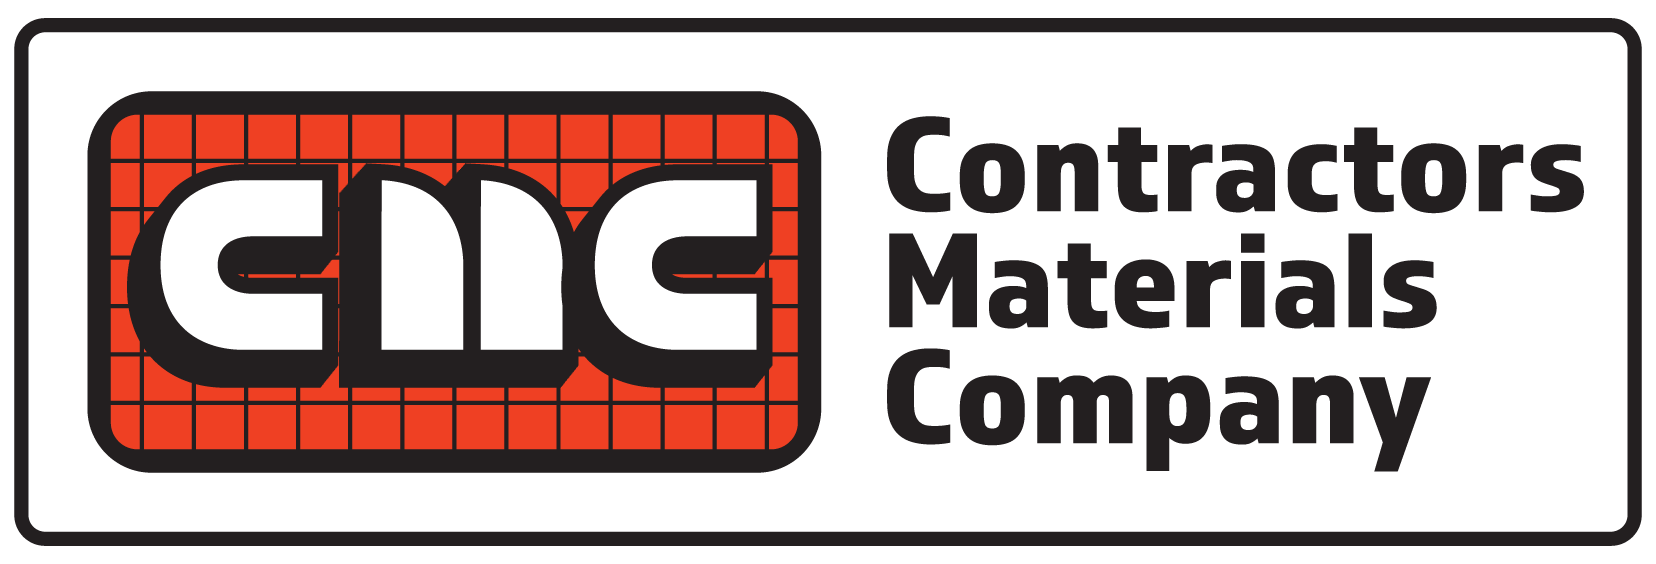 Contractors Materials Company